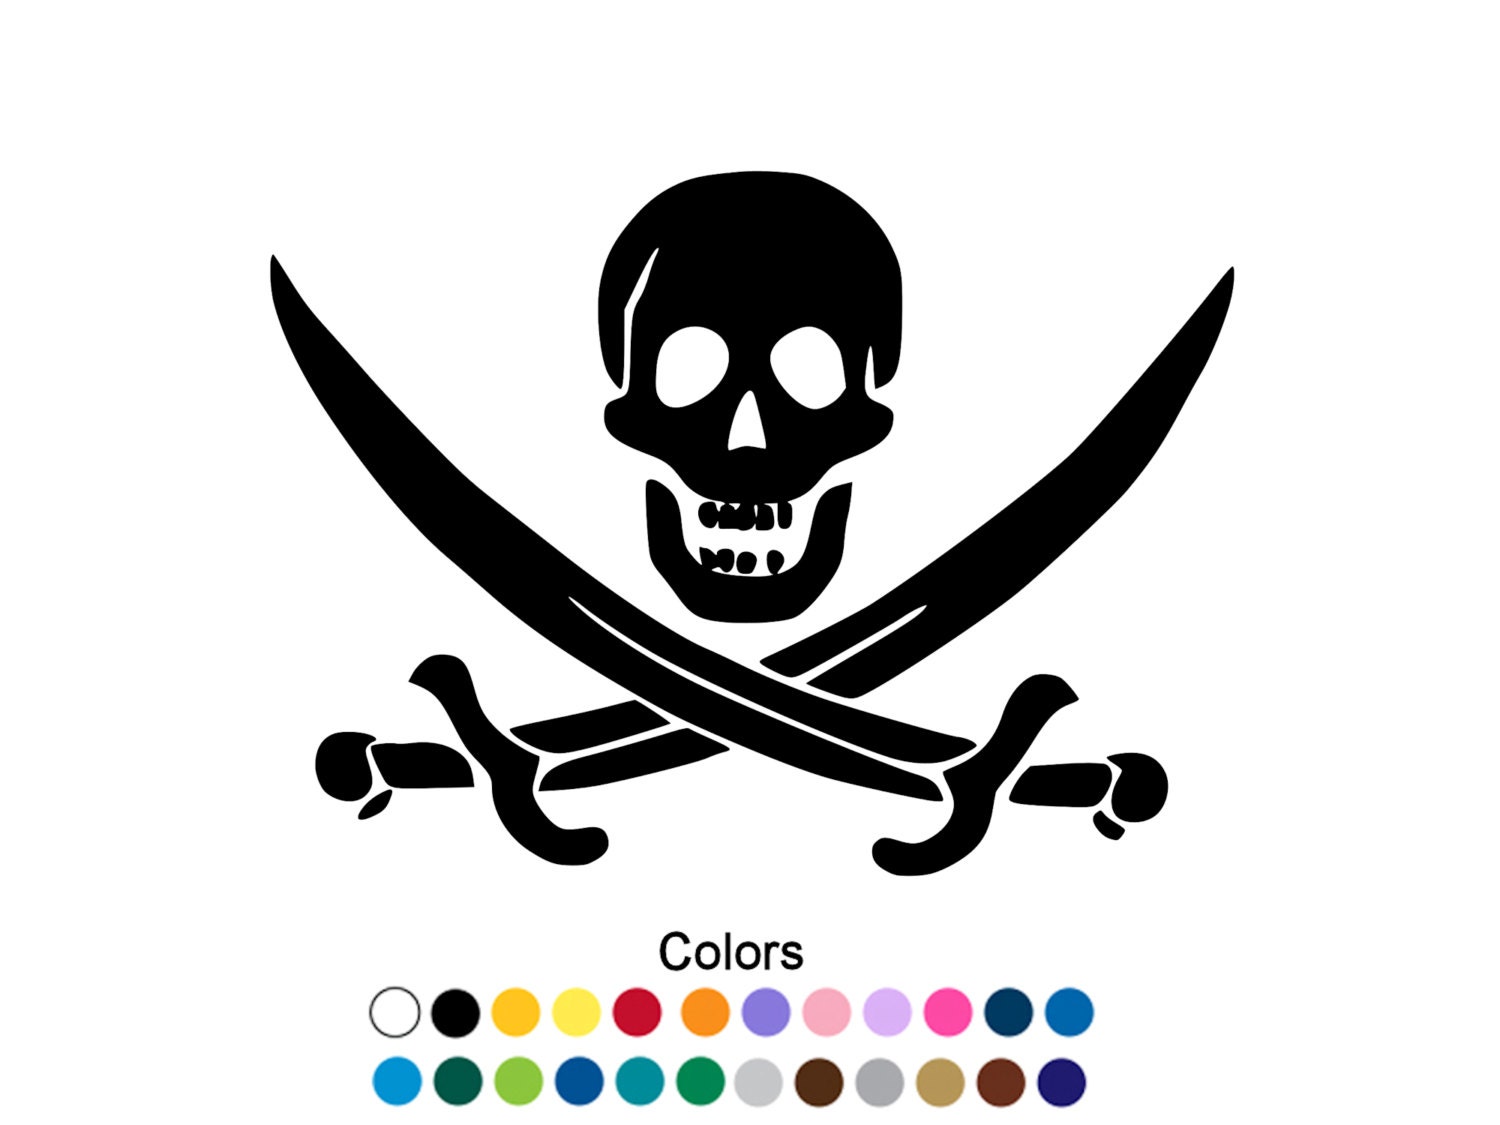 Герб пиратов